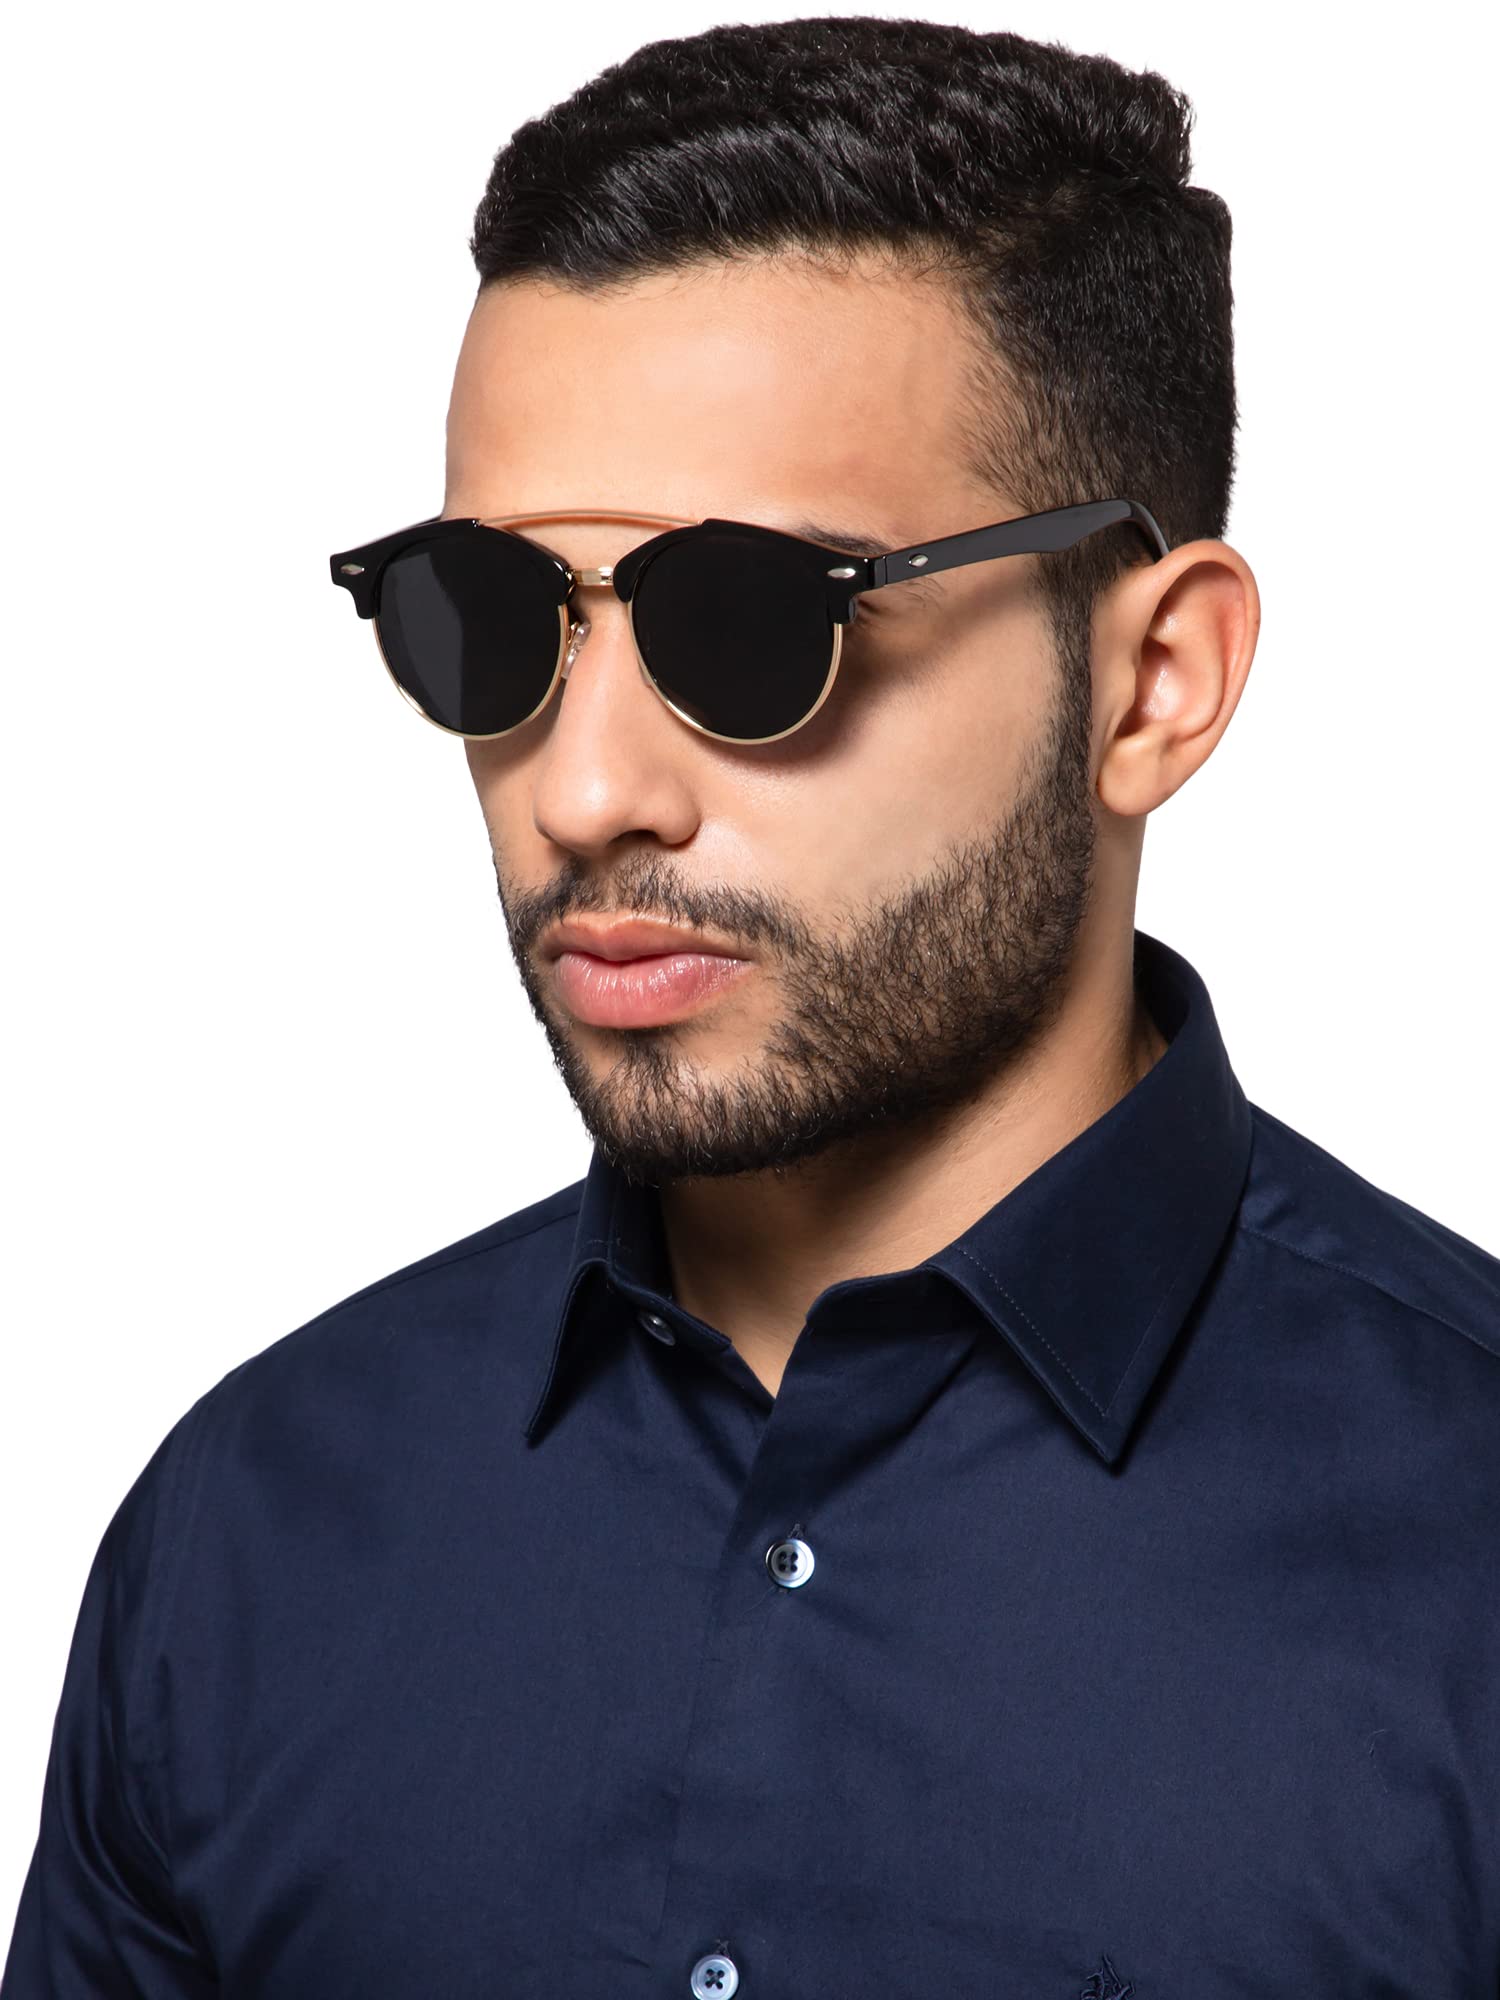 Intellilens Round Sunglasses For Men & Women|Polarized & UV Protected Goggles for Men & Women (Black & Grey) (52-17-138)